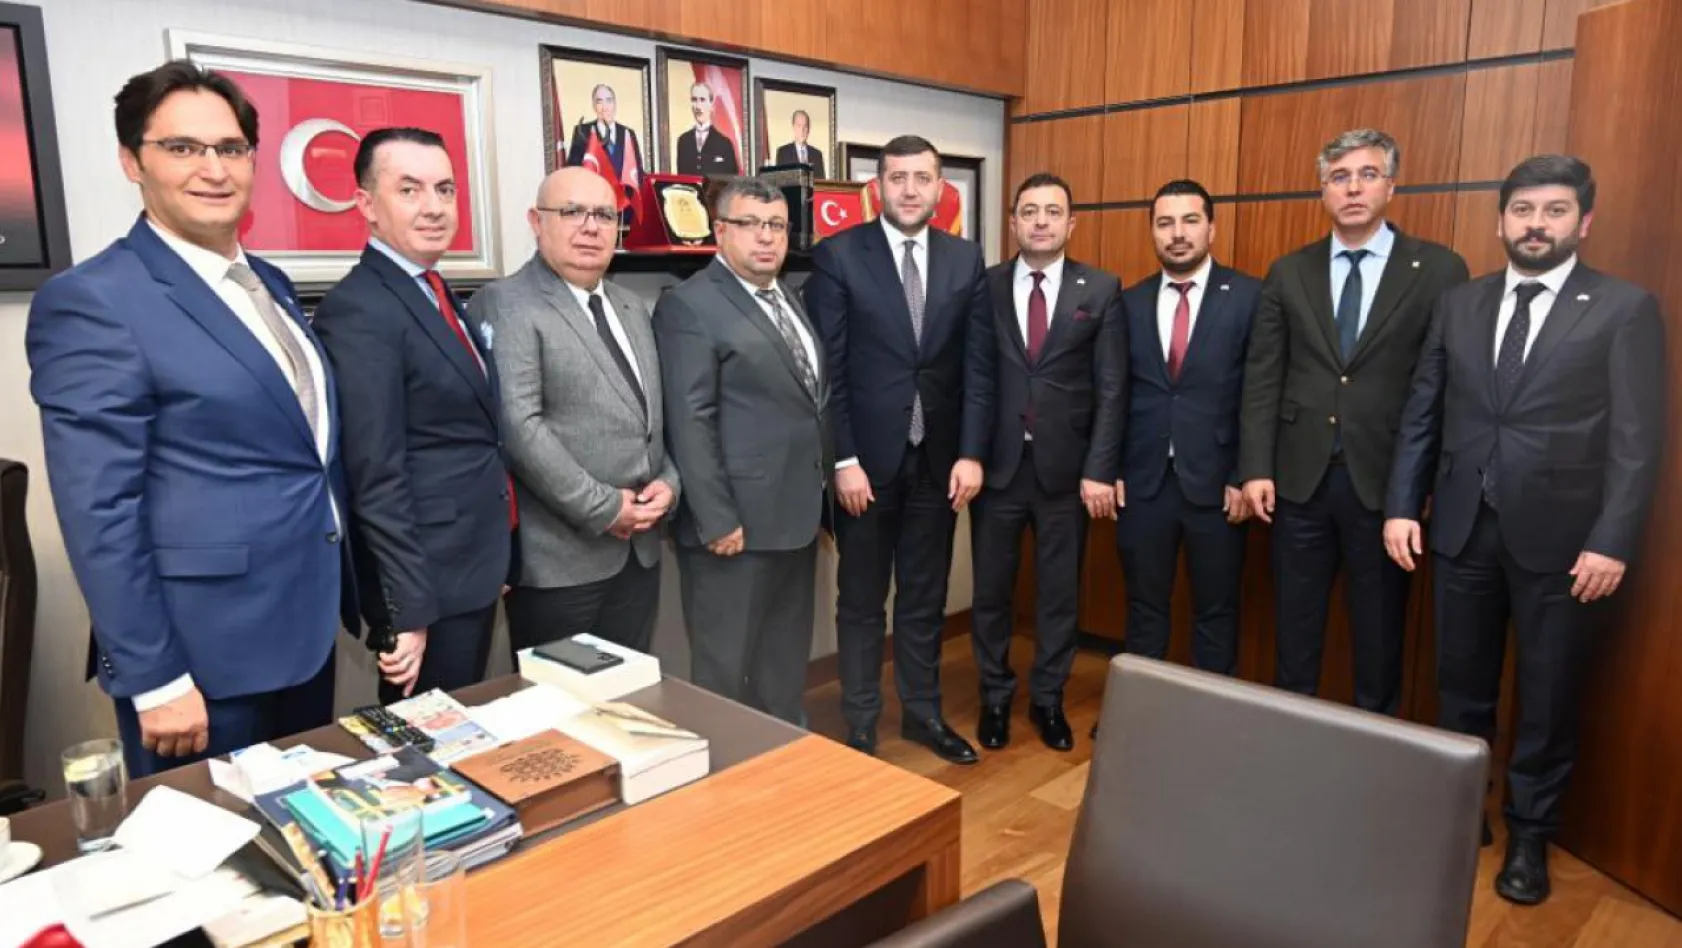 OSB yönetiminin Ankara ziyaretinin perde arkasında ne var?